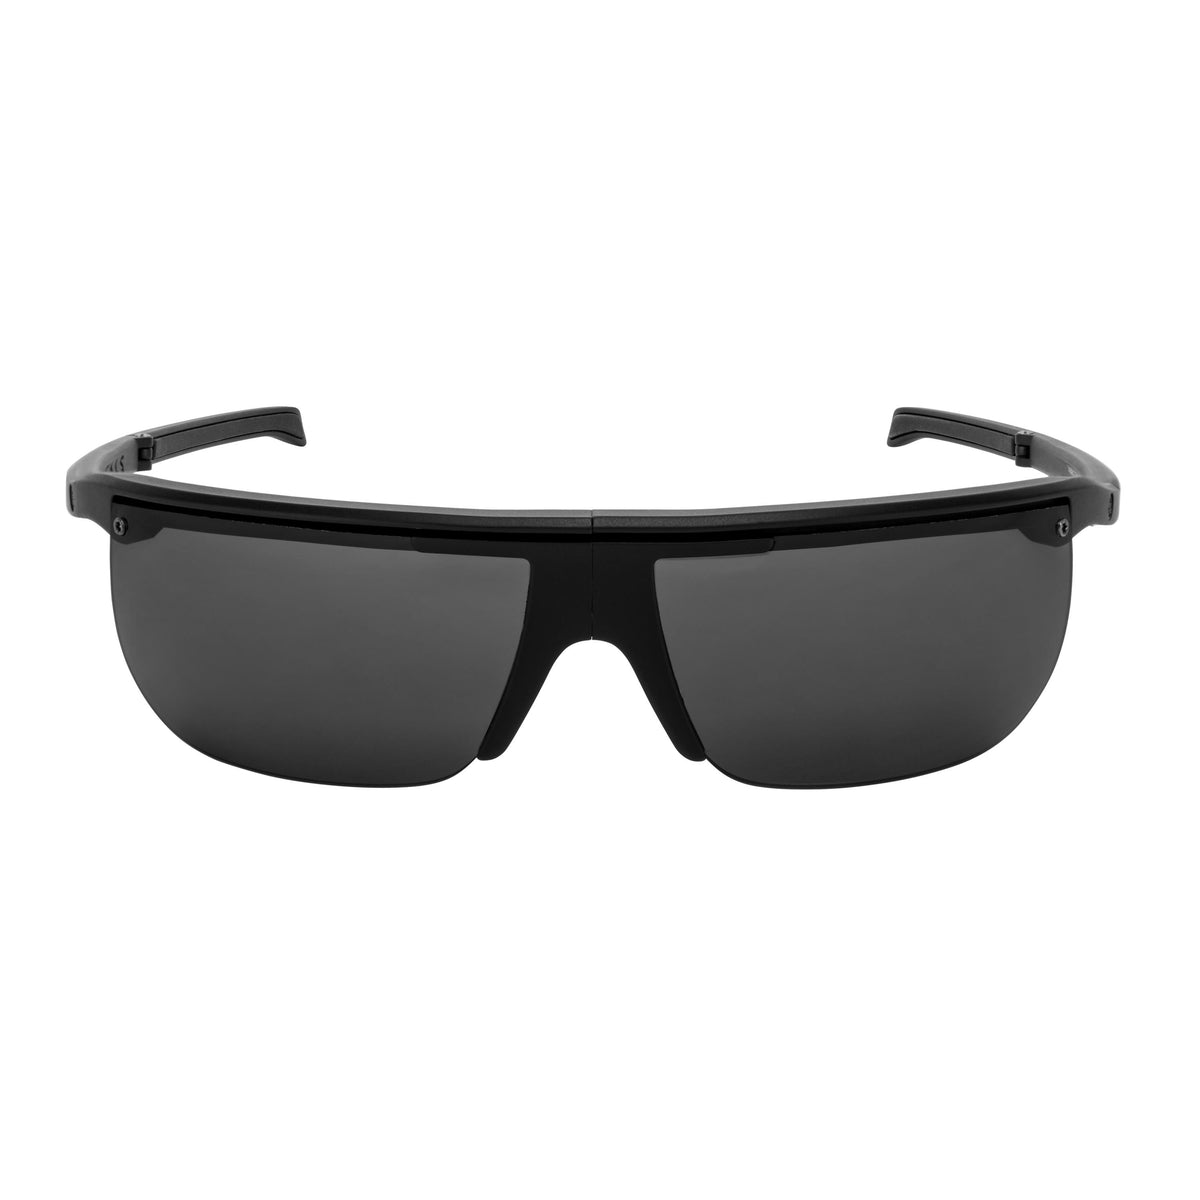 Popticals, Premium Compact Sunglasses, PopArt, 010030-BMGP, Polarized Sunglasses, Matte Black Frame, Gray Lenses, Front Tilt View